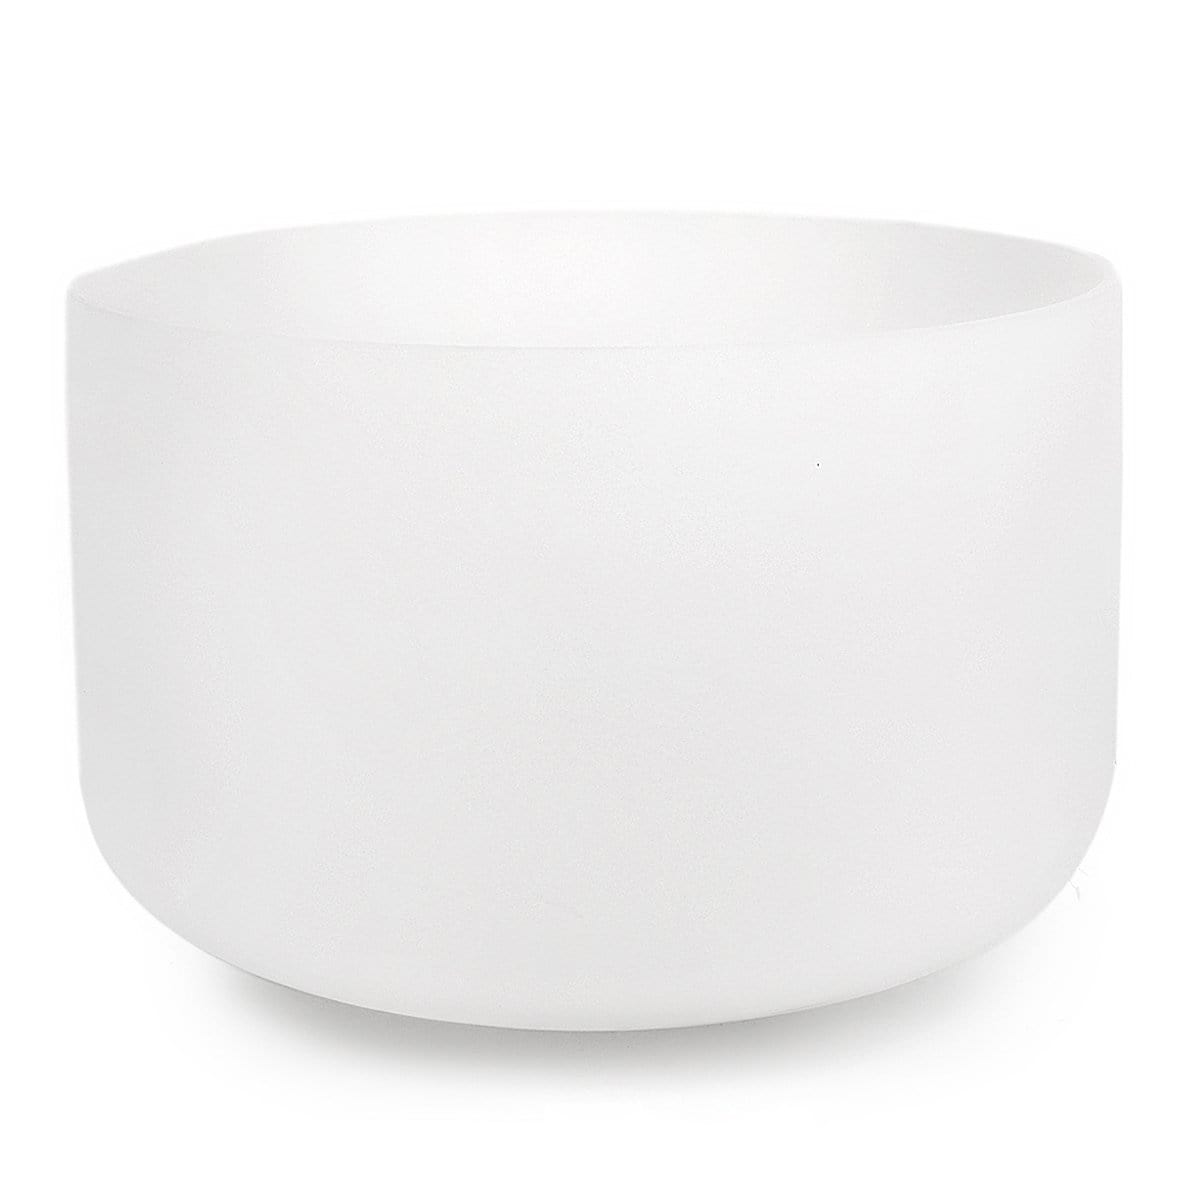 Karma and Luck  Singing Bowl  -  Aspiring Echo - XL White Crystal Singing Bowl